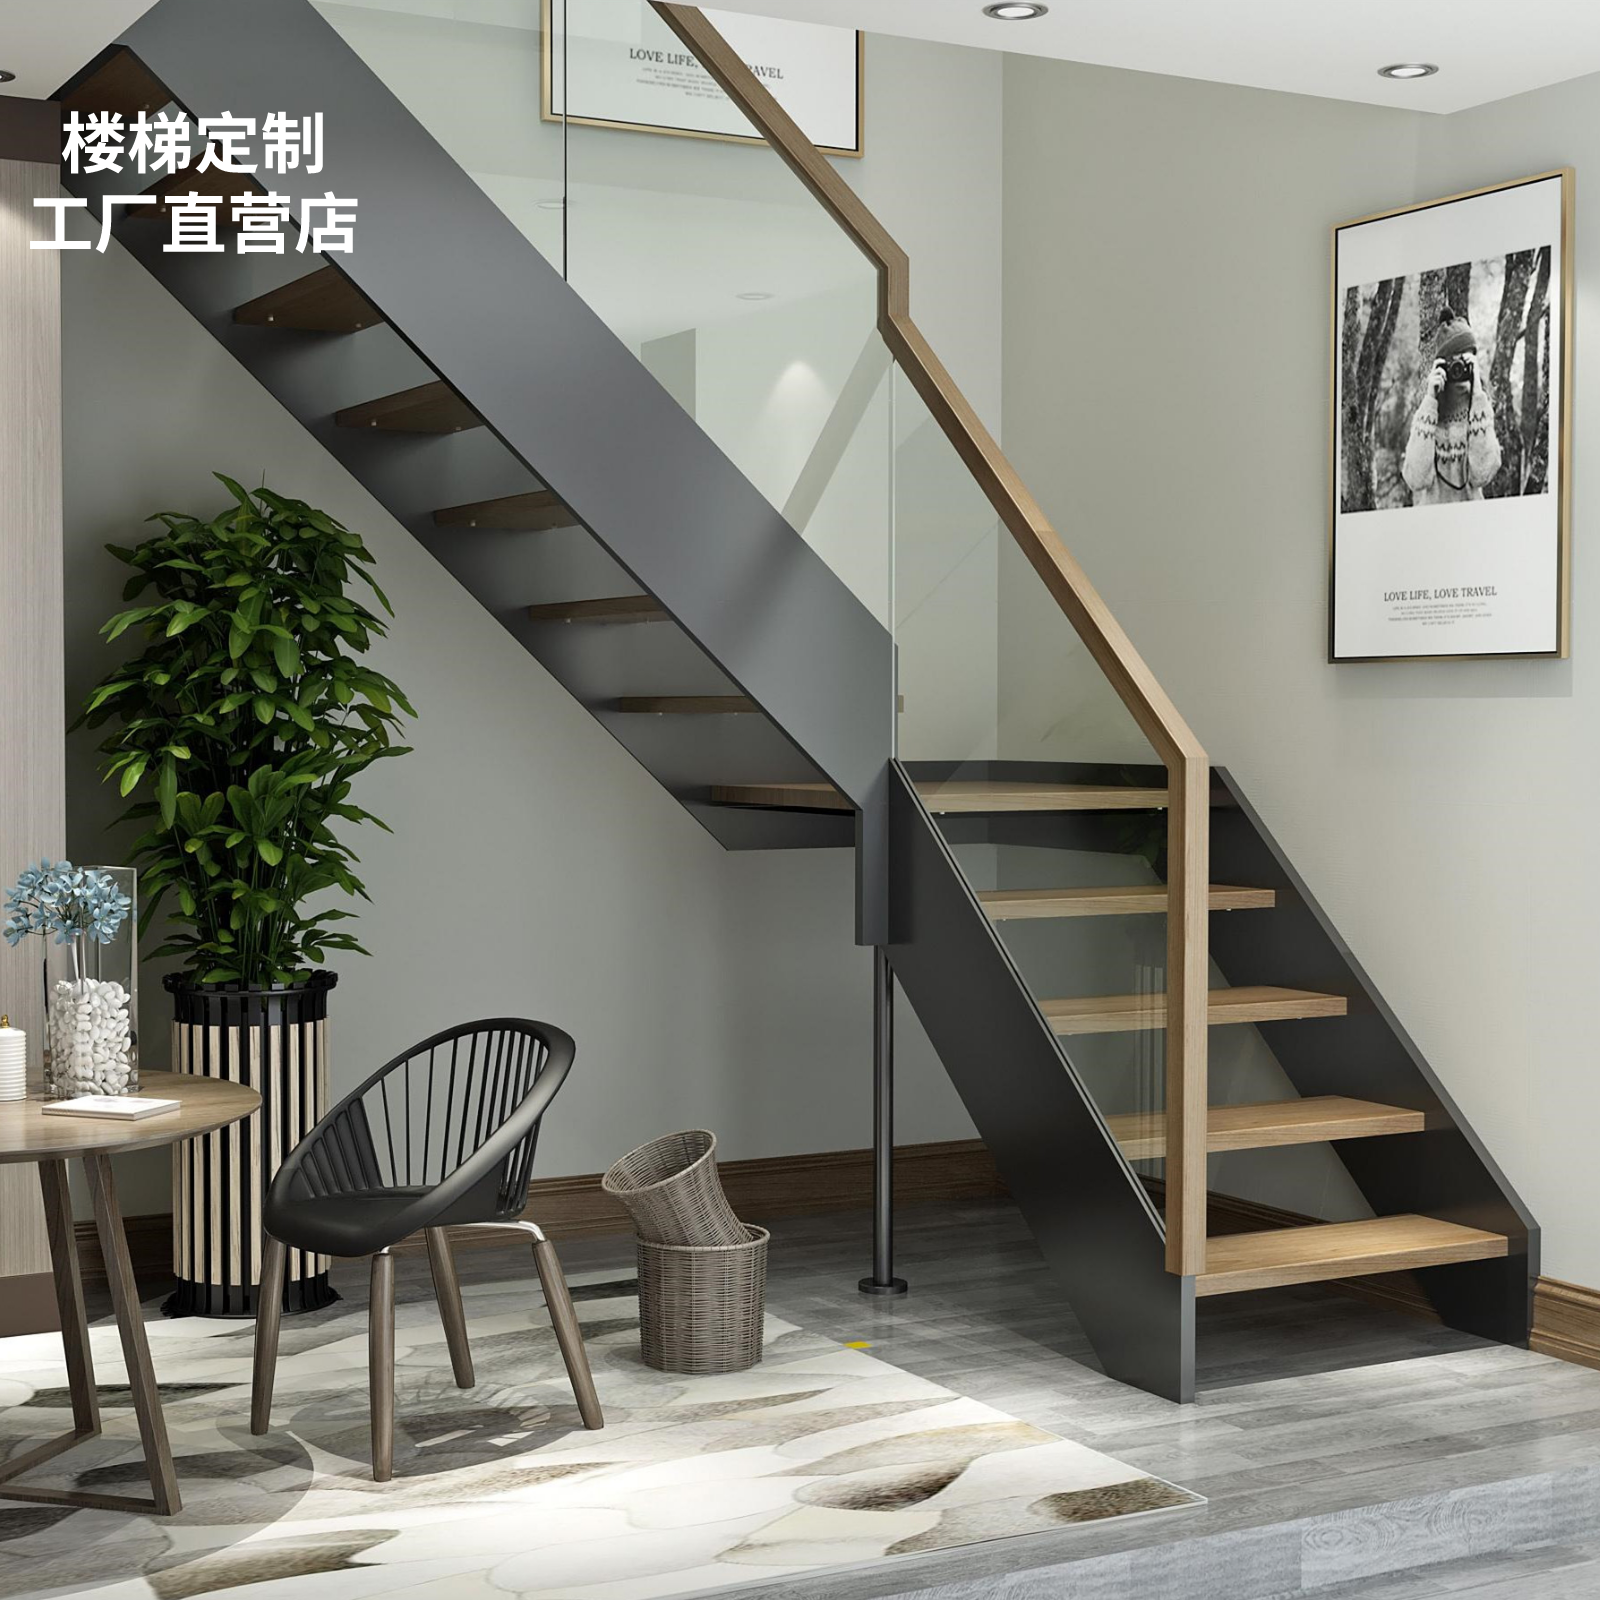 上海定制室内公寓整体实木阁楼复式别墅旋转双梁钢木玻璃楼梯护栏